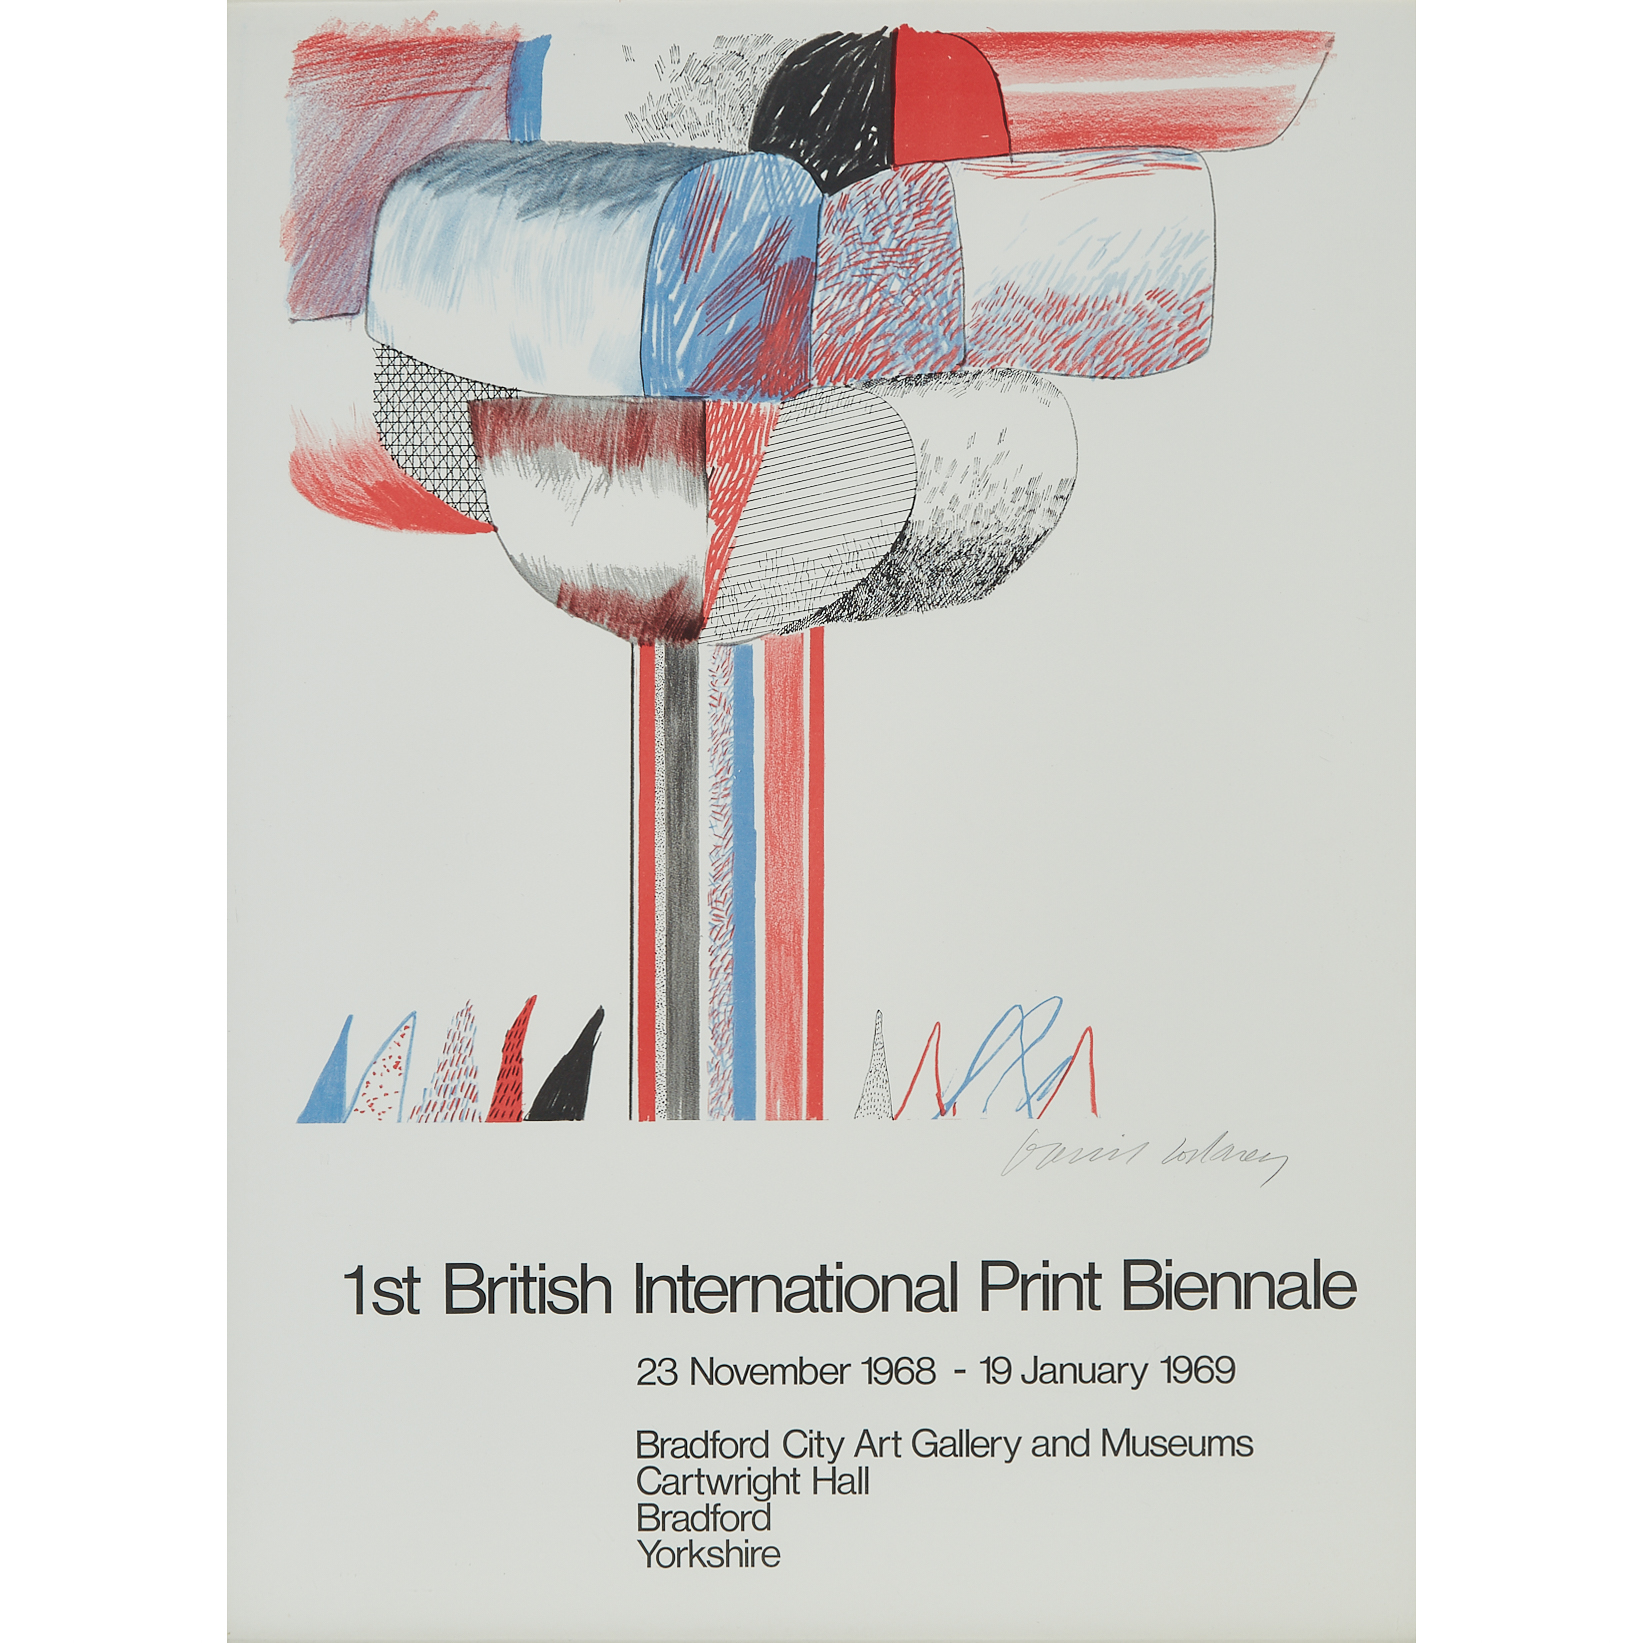 David Hockney (1937-)